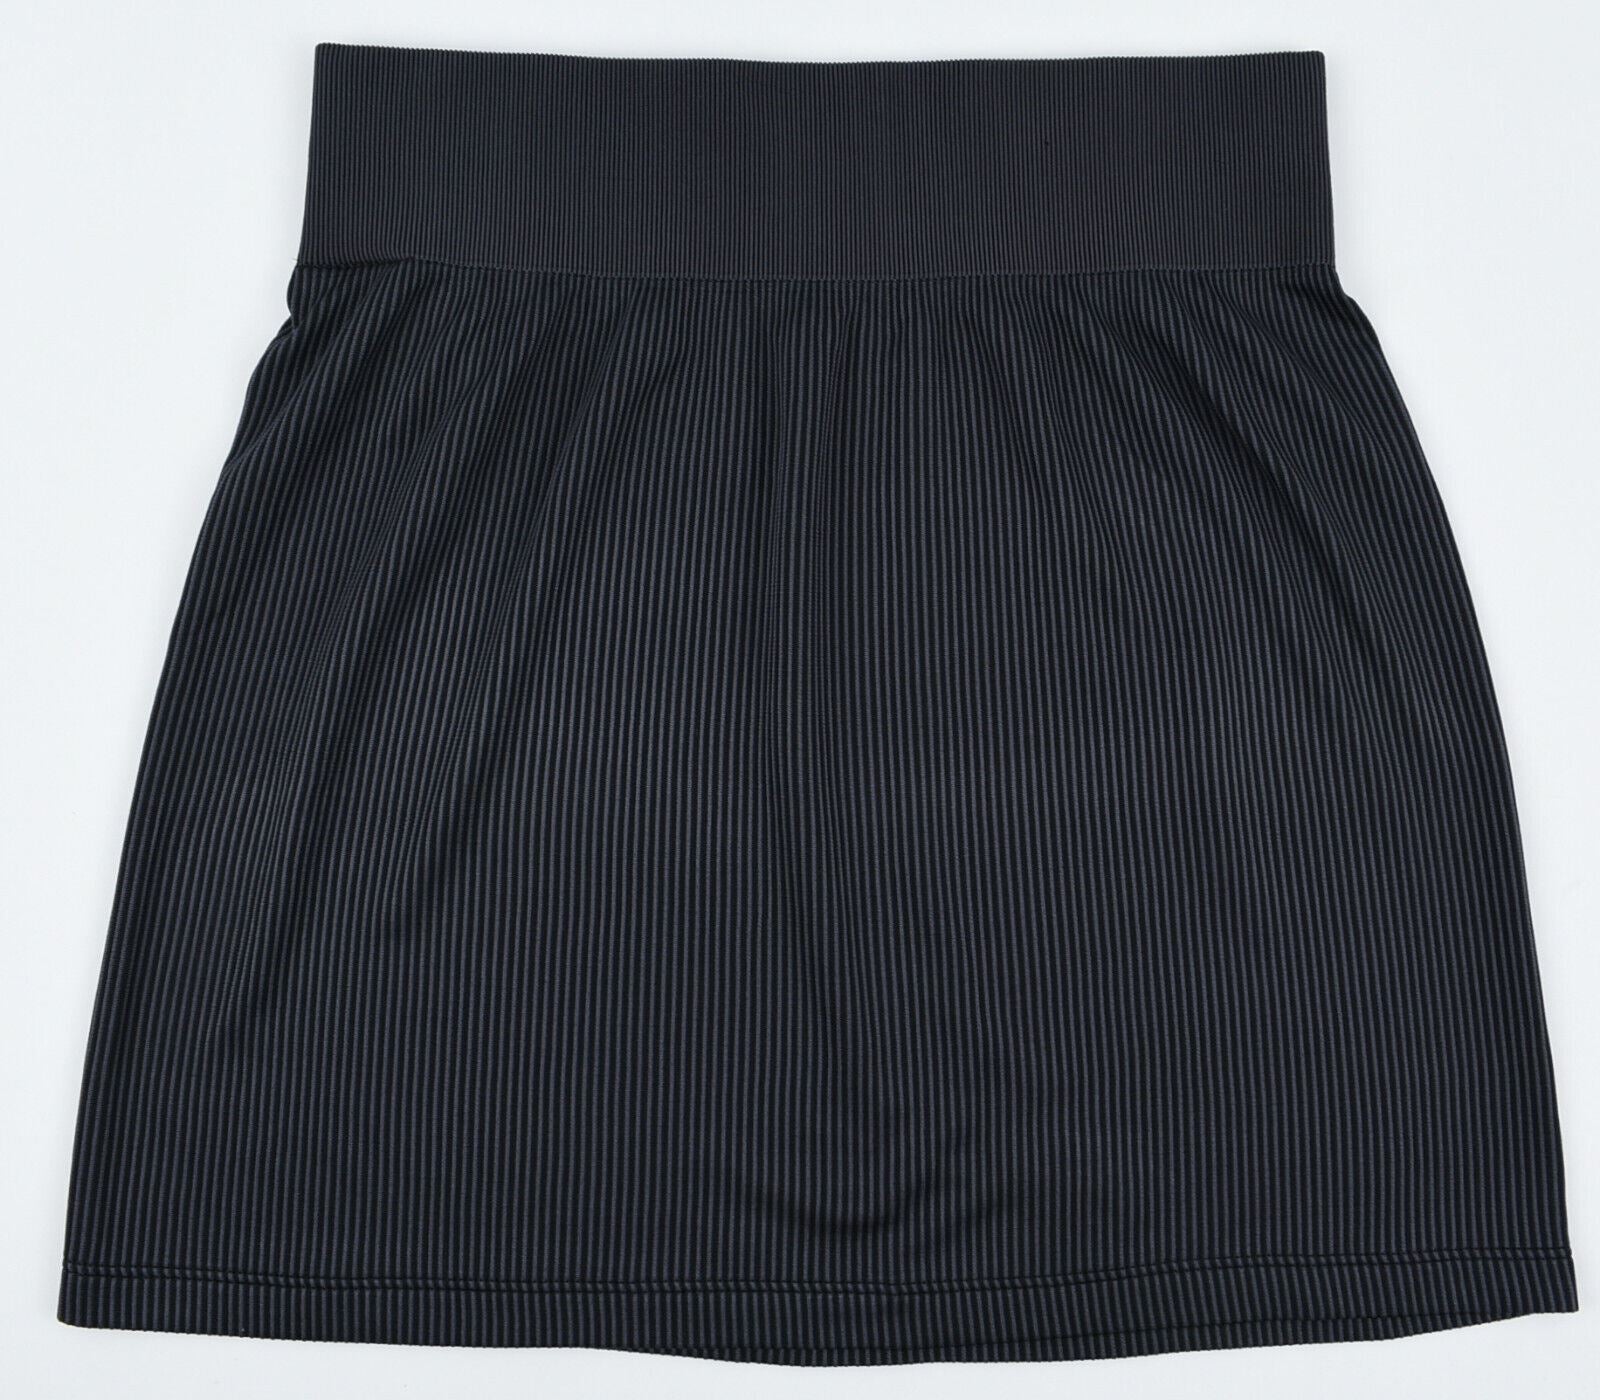 NIKE AIR Women's Rib Mini Skirt, Black, size L /UK 14